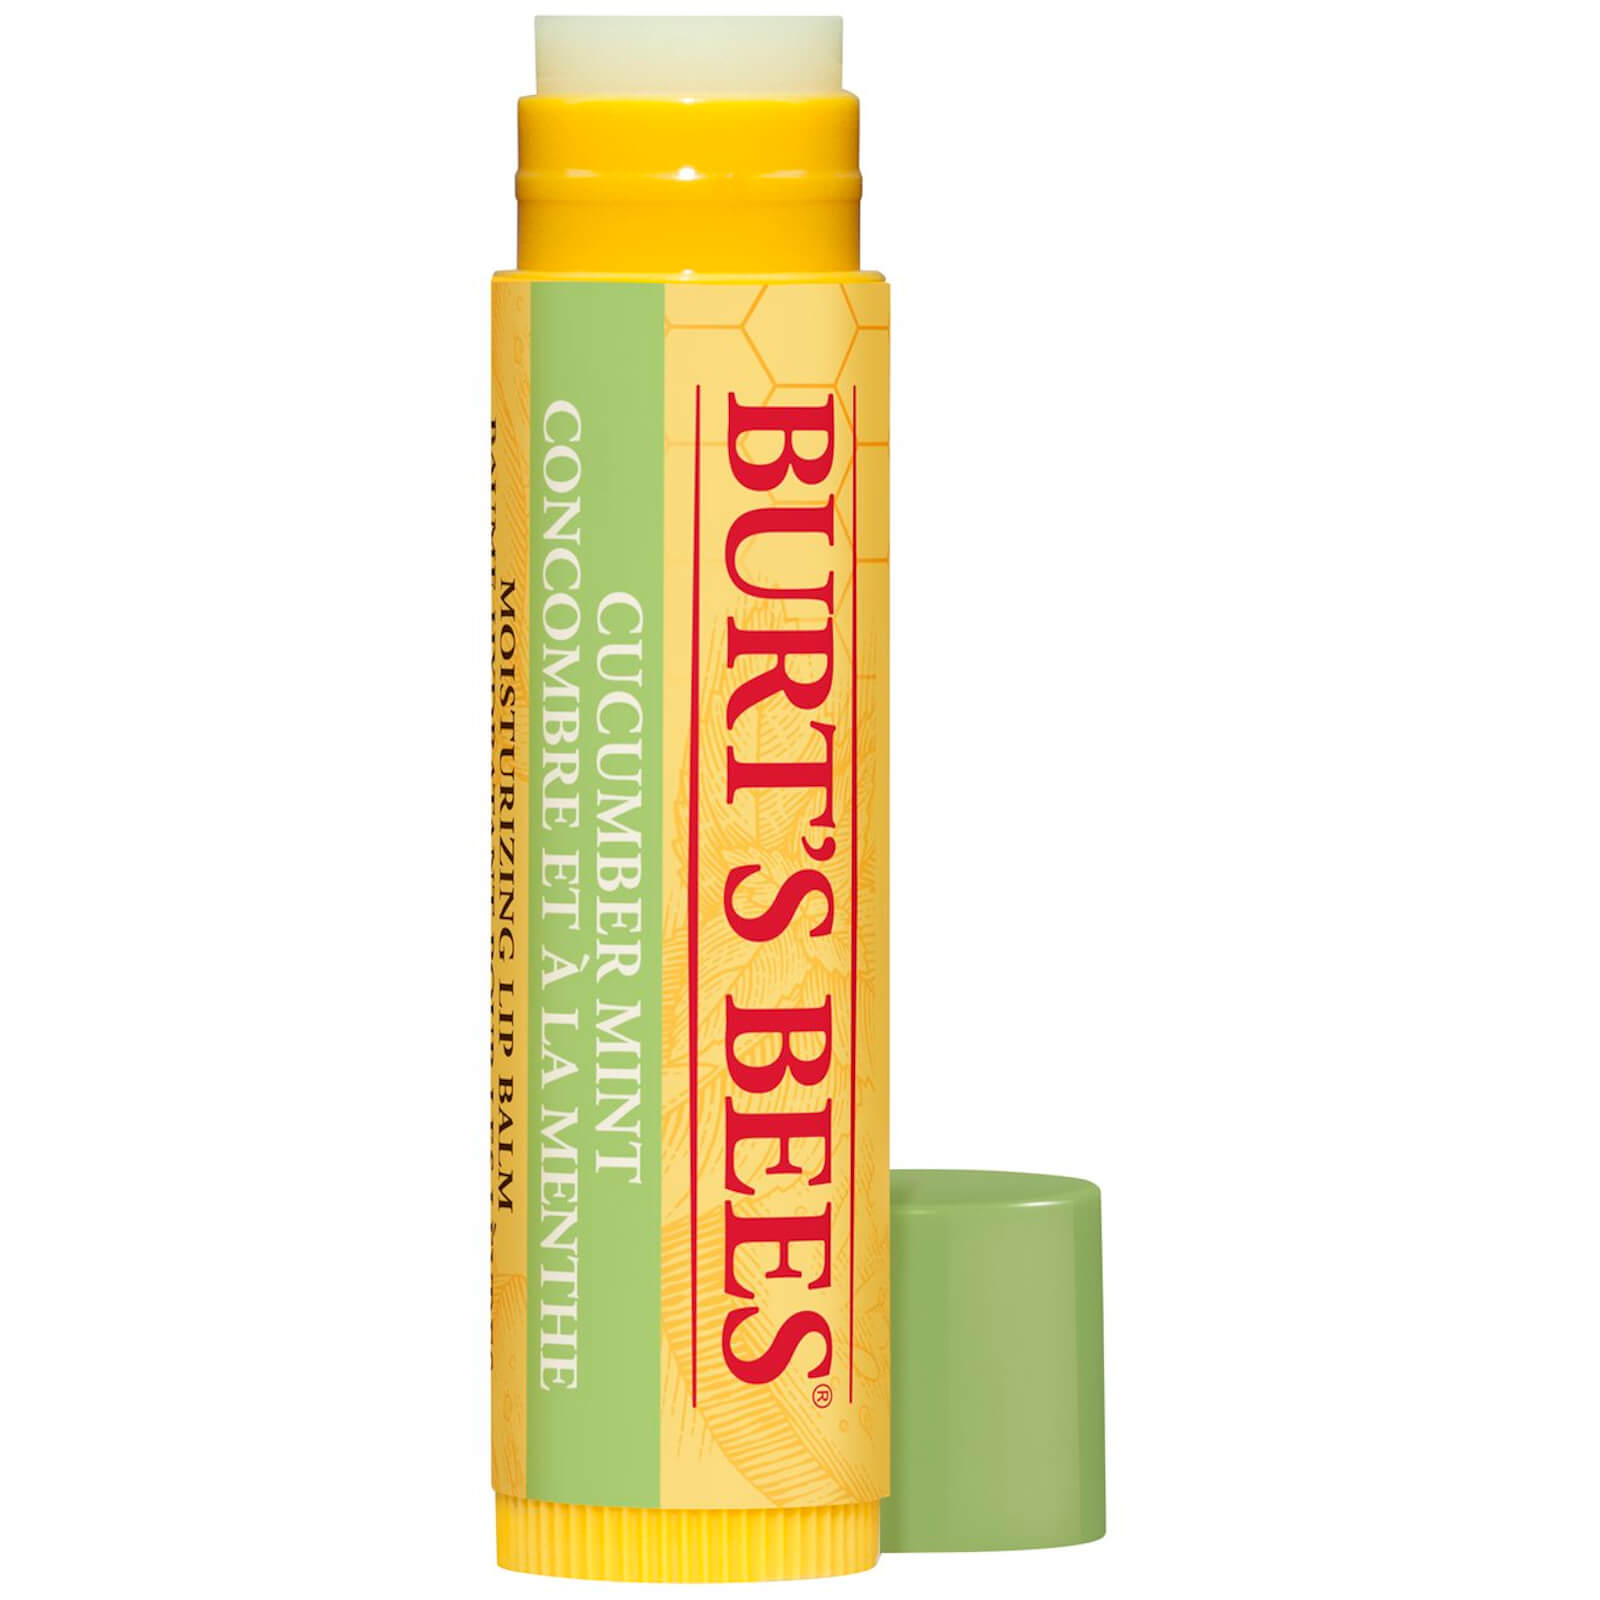 Burt's Bees 100% Natural Moisturising Cucumber Mint Lip Balm 4.25g